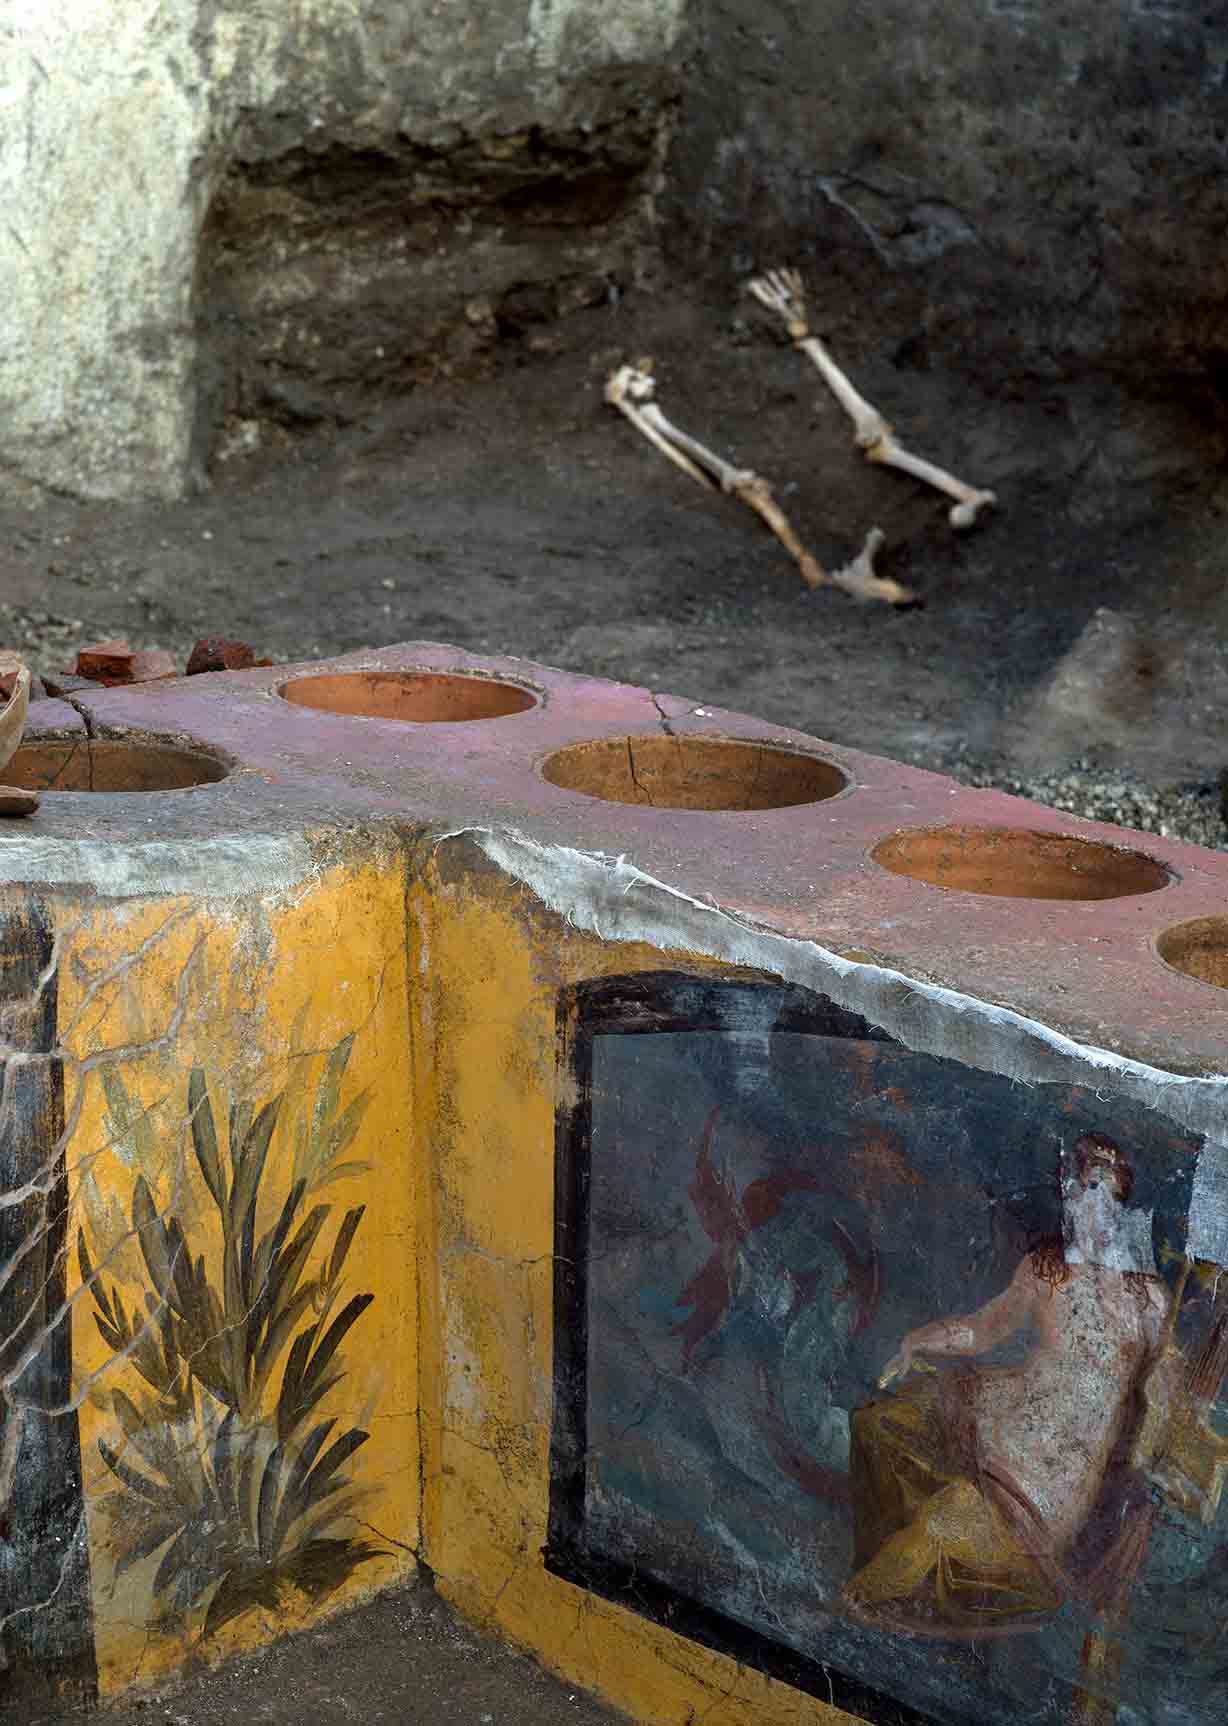 Los restos de uno de los individuos en la parte superior de esta imagen, que fue descubierto en una cama en la parte trasera de una habitación en el increíble puesto de comida de Pompeya encontrado en marzo de 2019 dC en el sitio Regio V. (Parque Arqueológico de Pompeya)